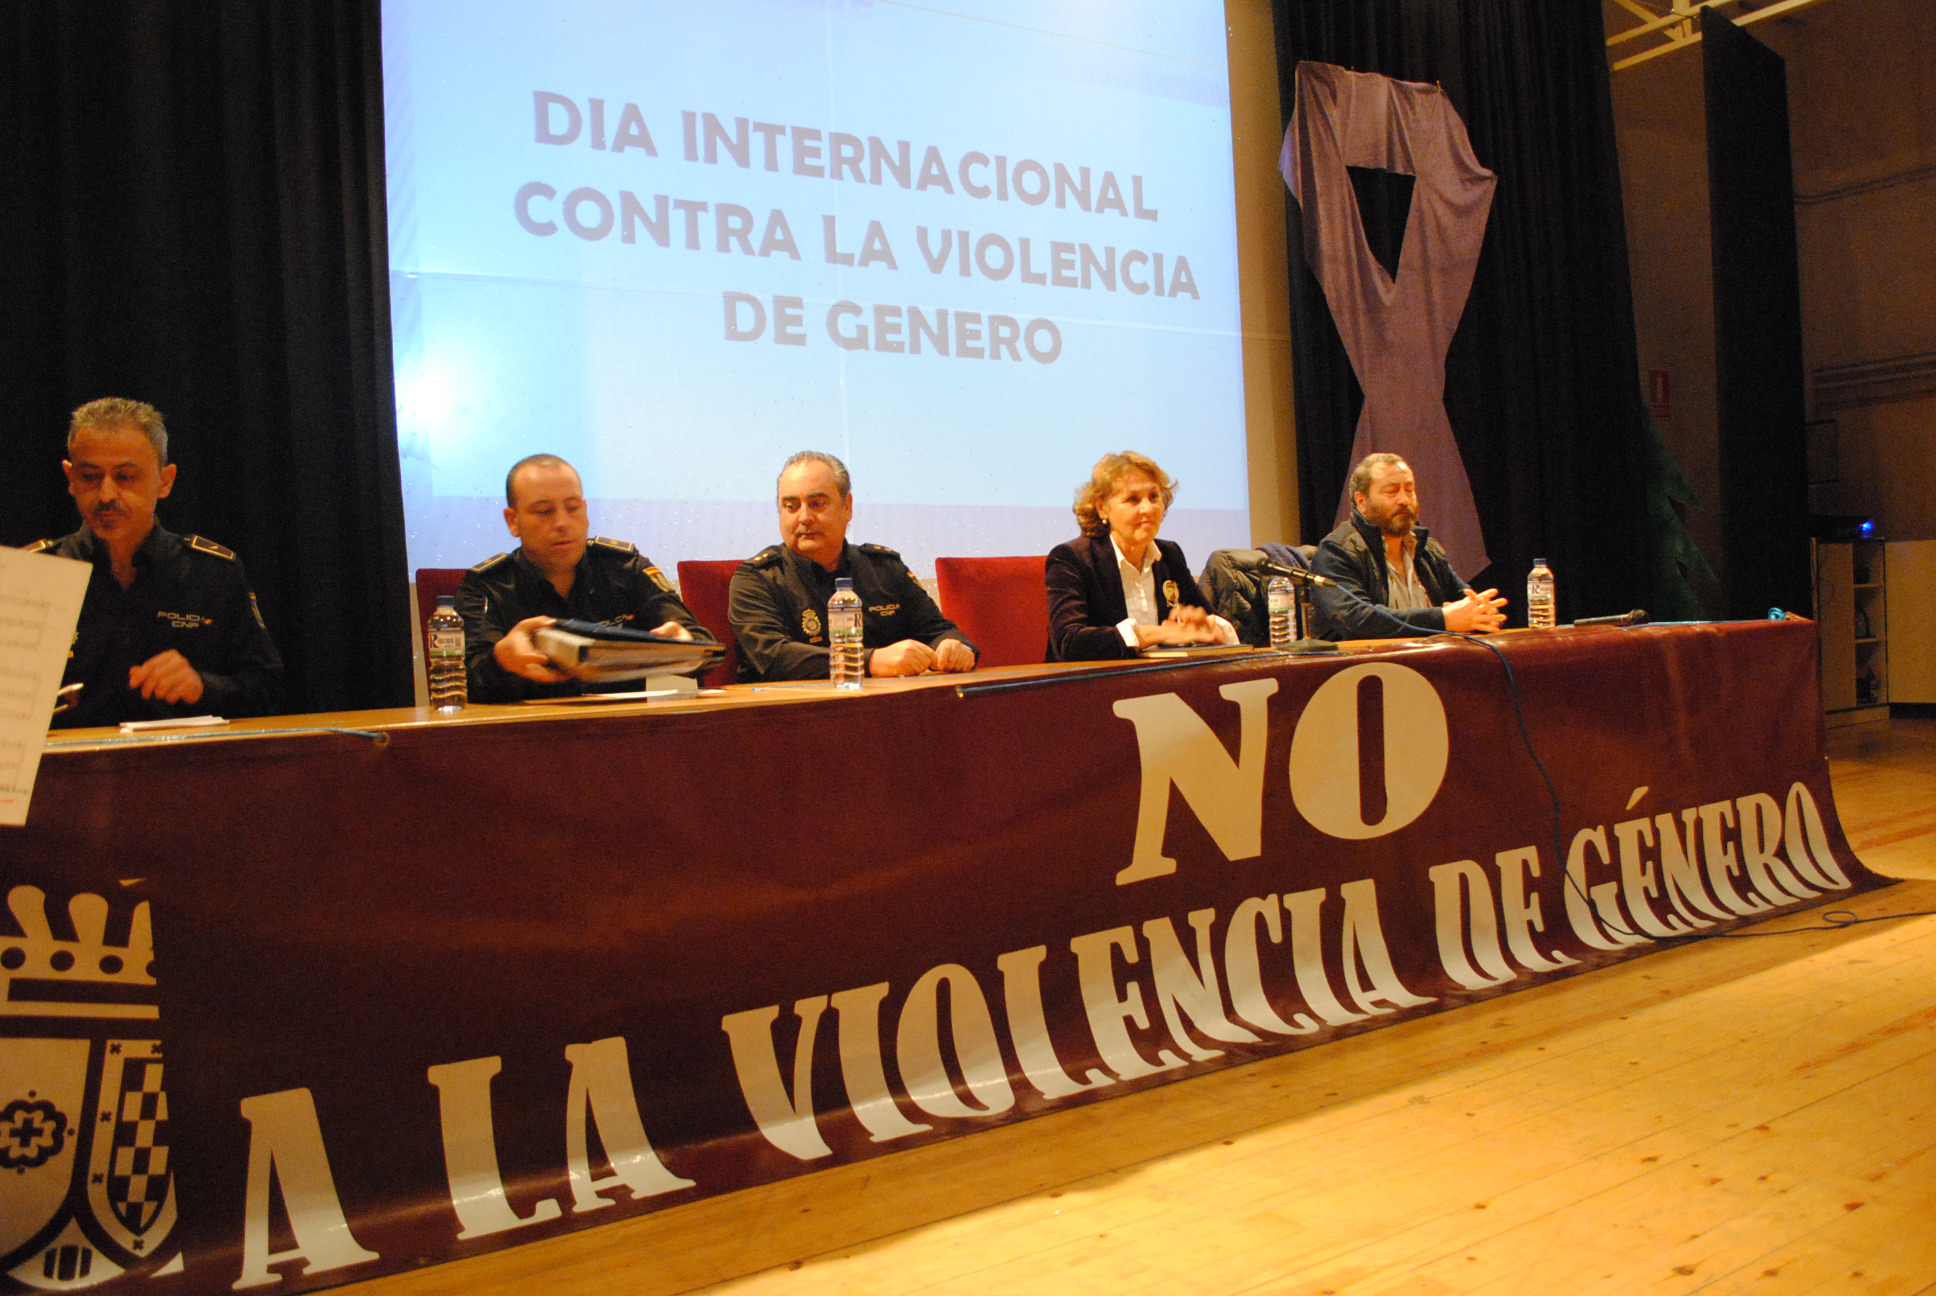 El acto contra la violencia de género reúne en Valdepeñas a 300 jóvenes para hacerles reflexionar